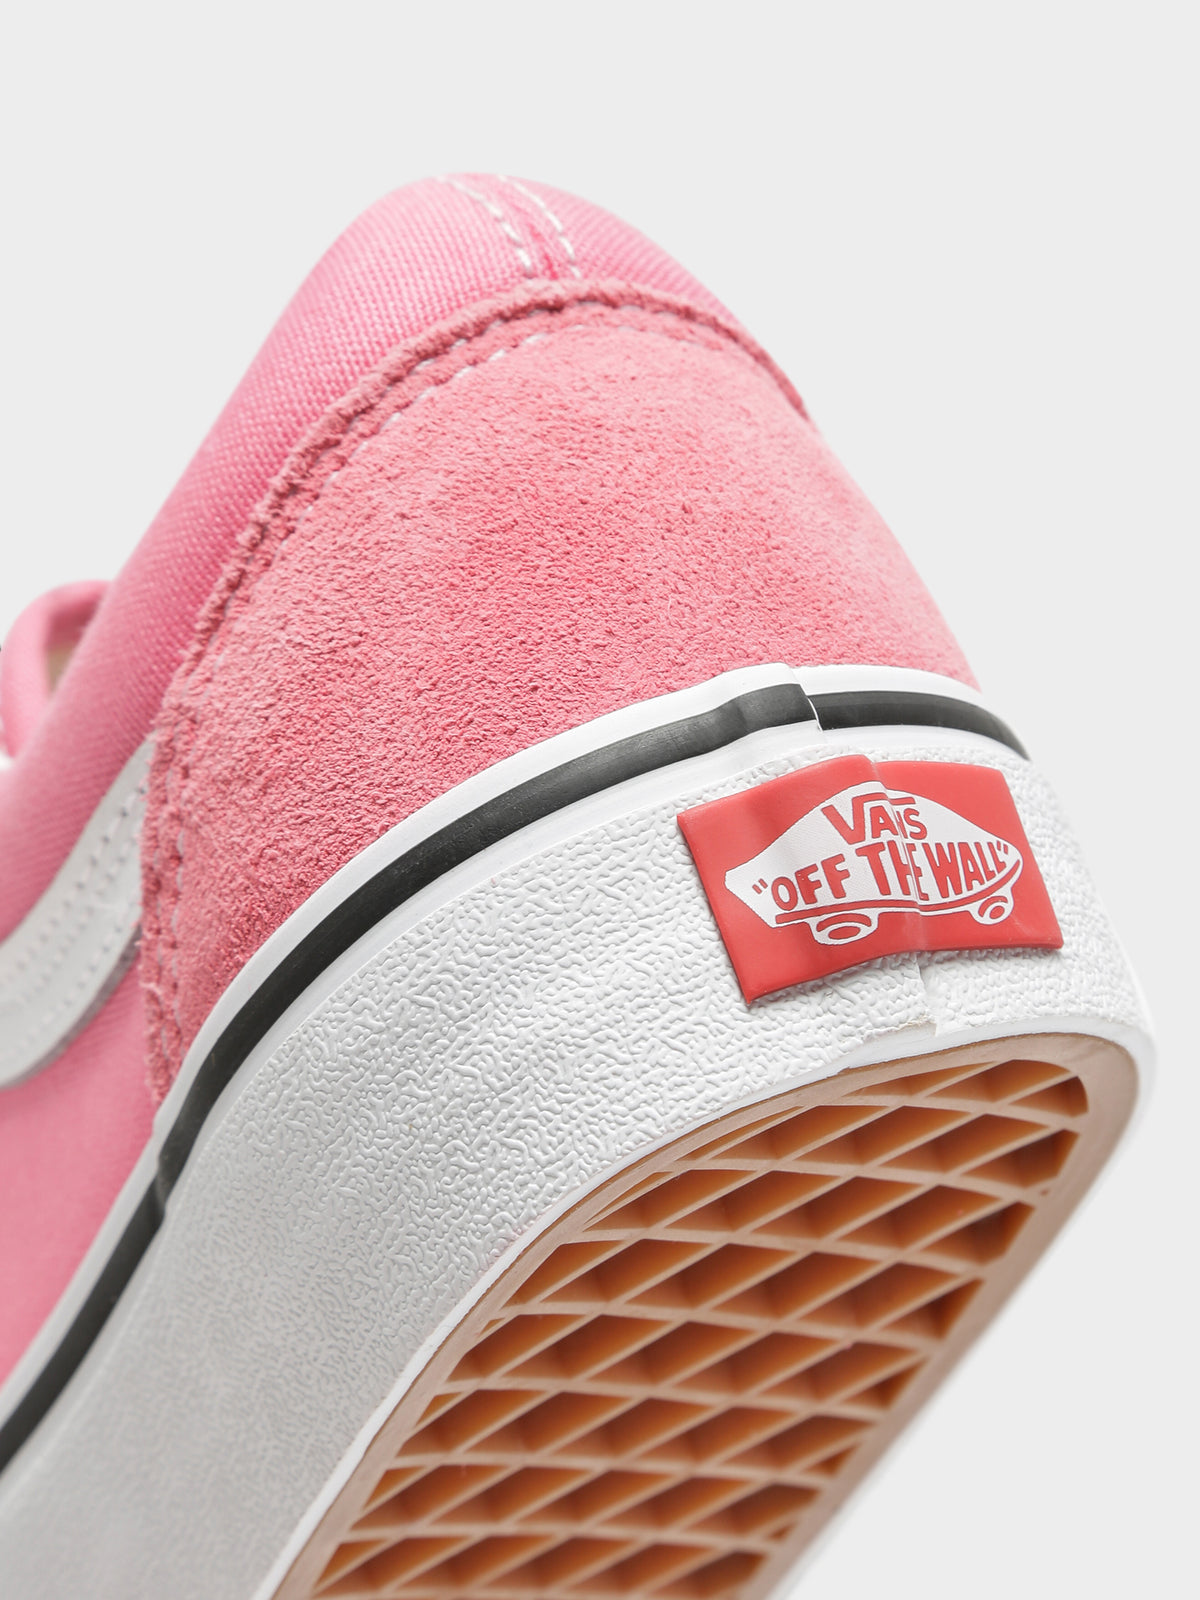 Unisex Old Skool Sneakers in Pink Lemonade